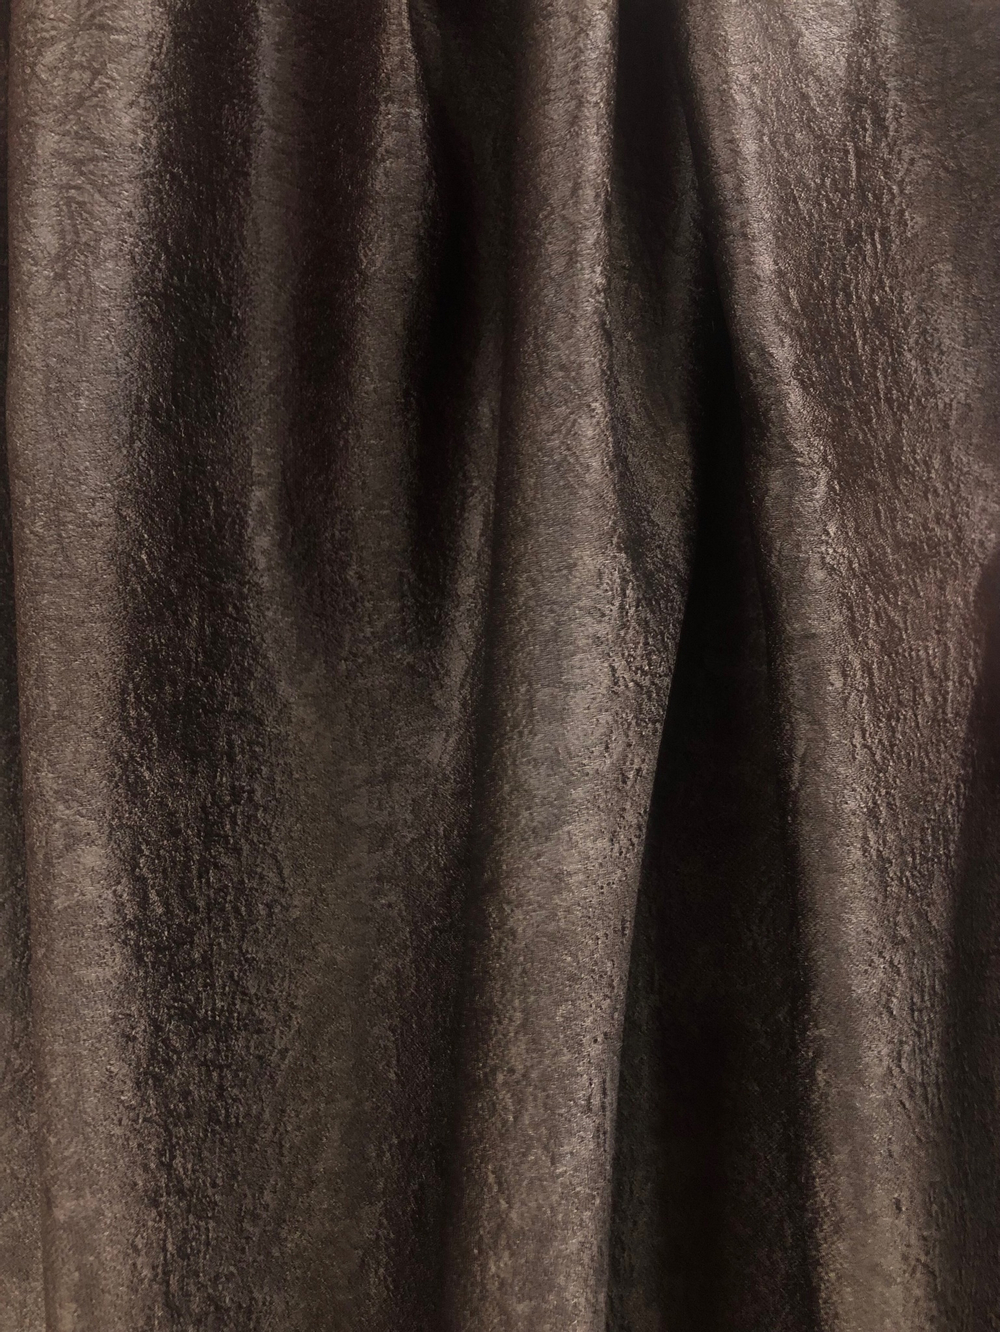 Ткань портьерная блэкаут лен двухсторонний коричневый артикул 327743